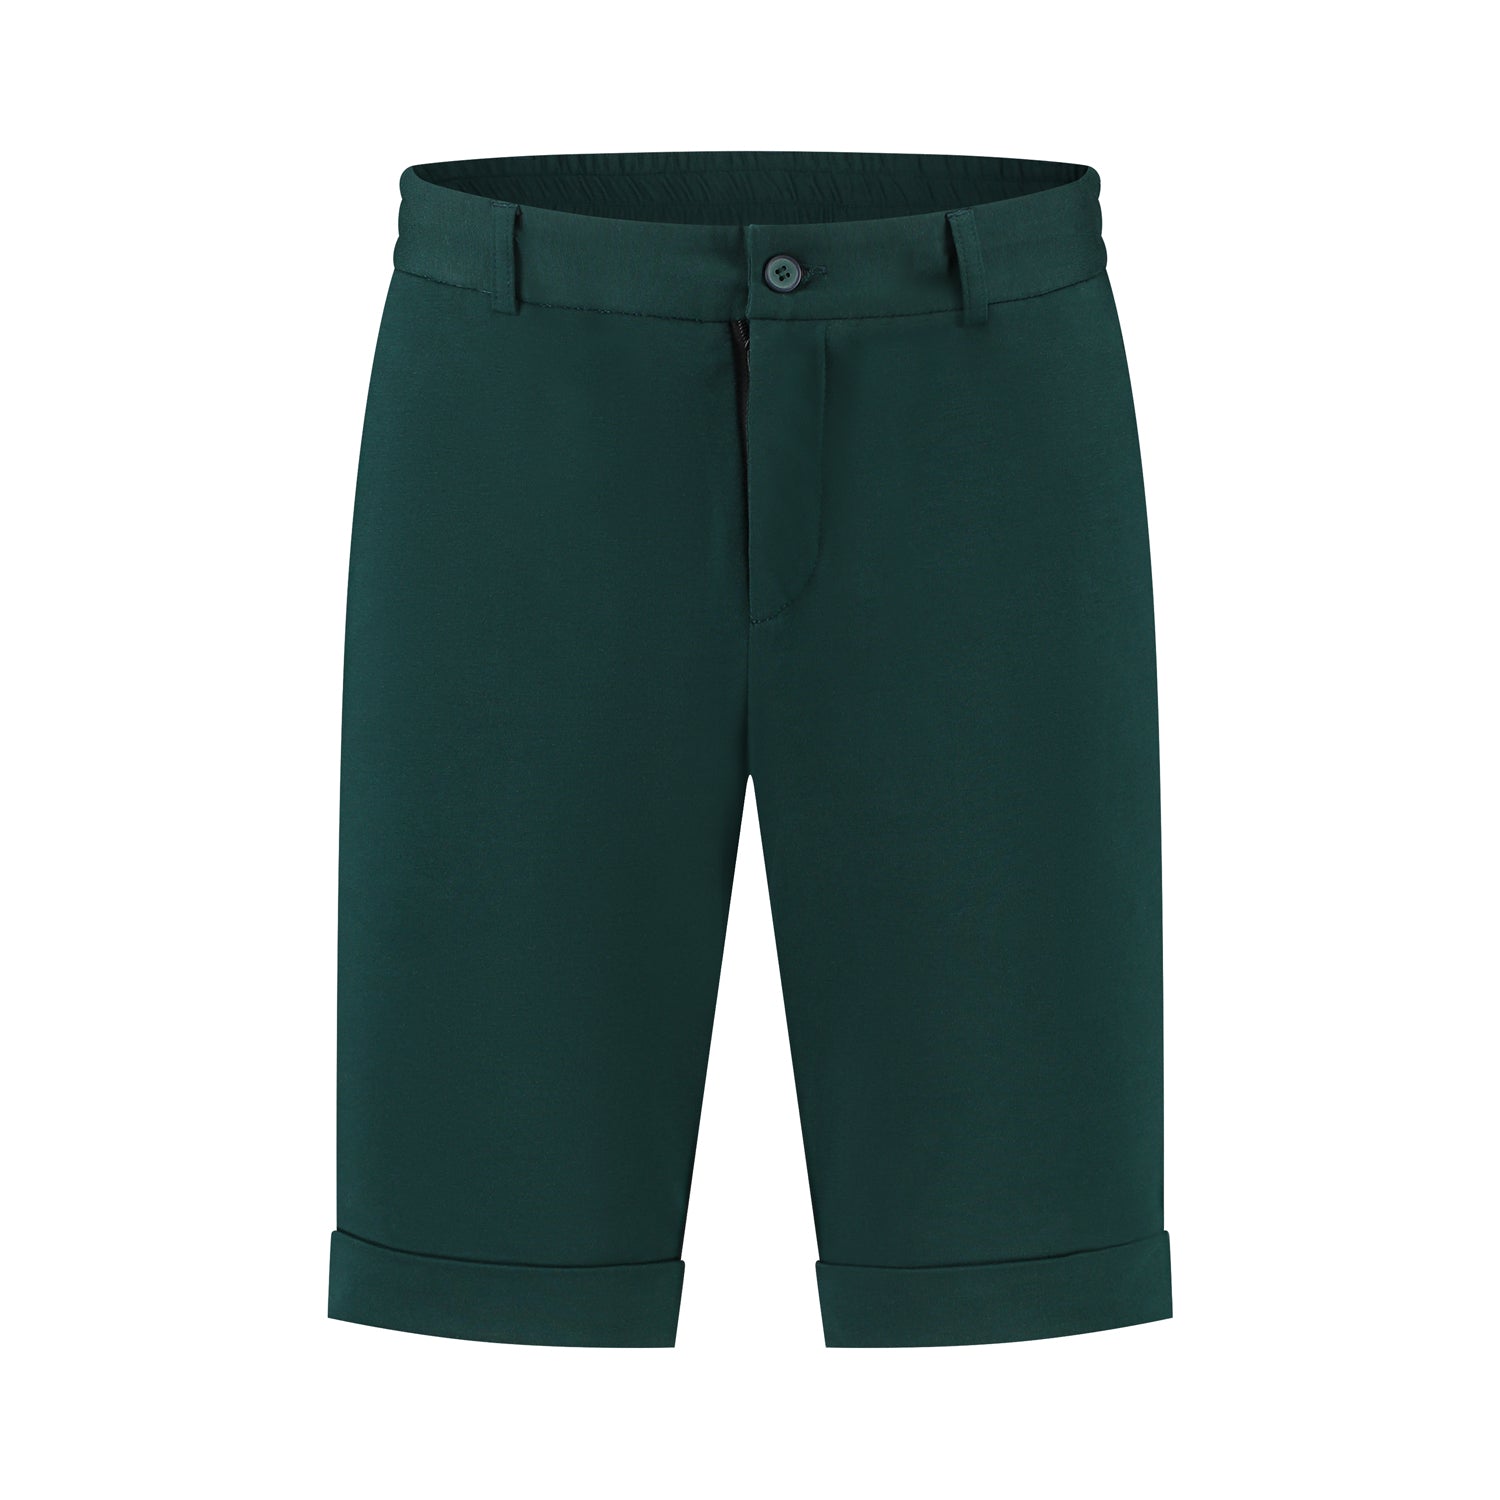 Jog-shorts groen